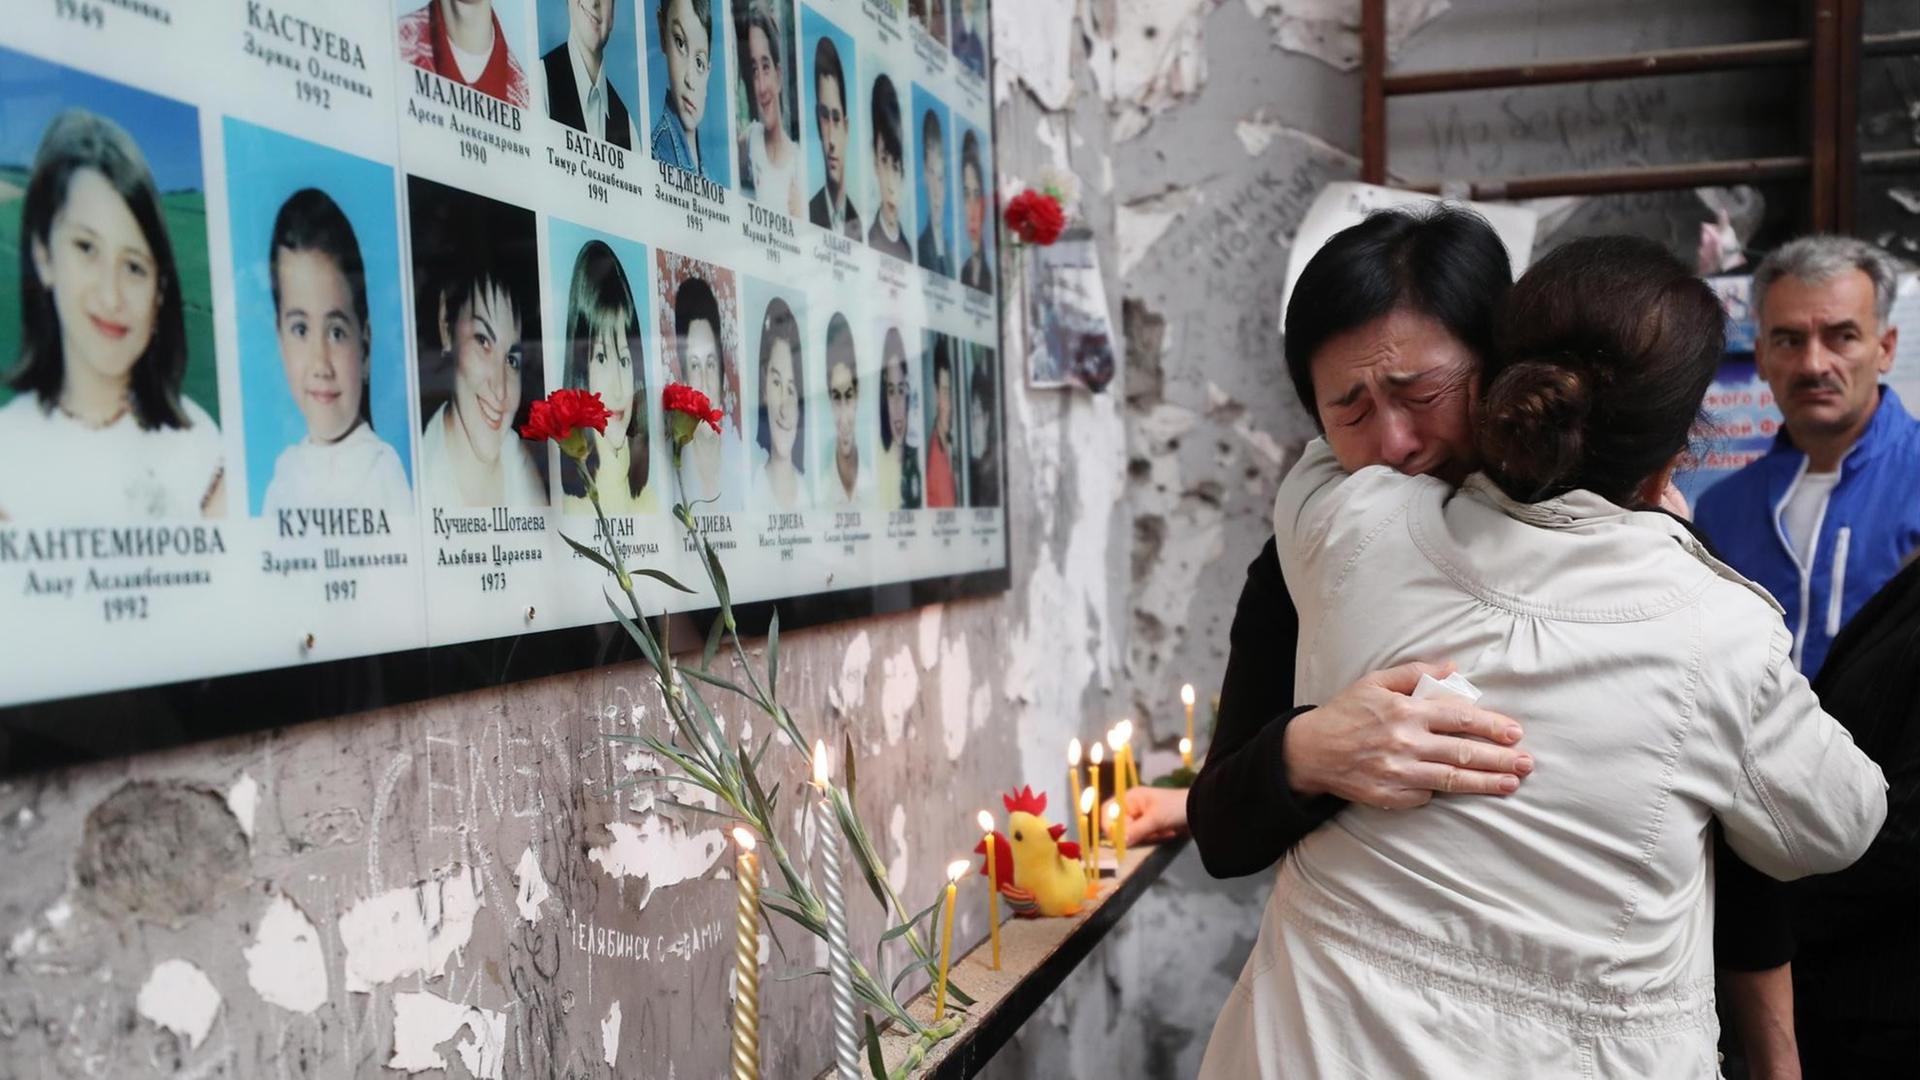 Zwei Frauen trauern um Kinder, die beim Geiseldrama in Beslan ums Leben kamen